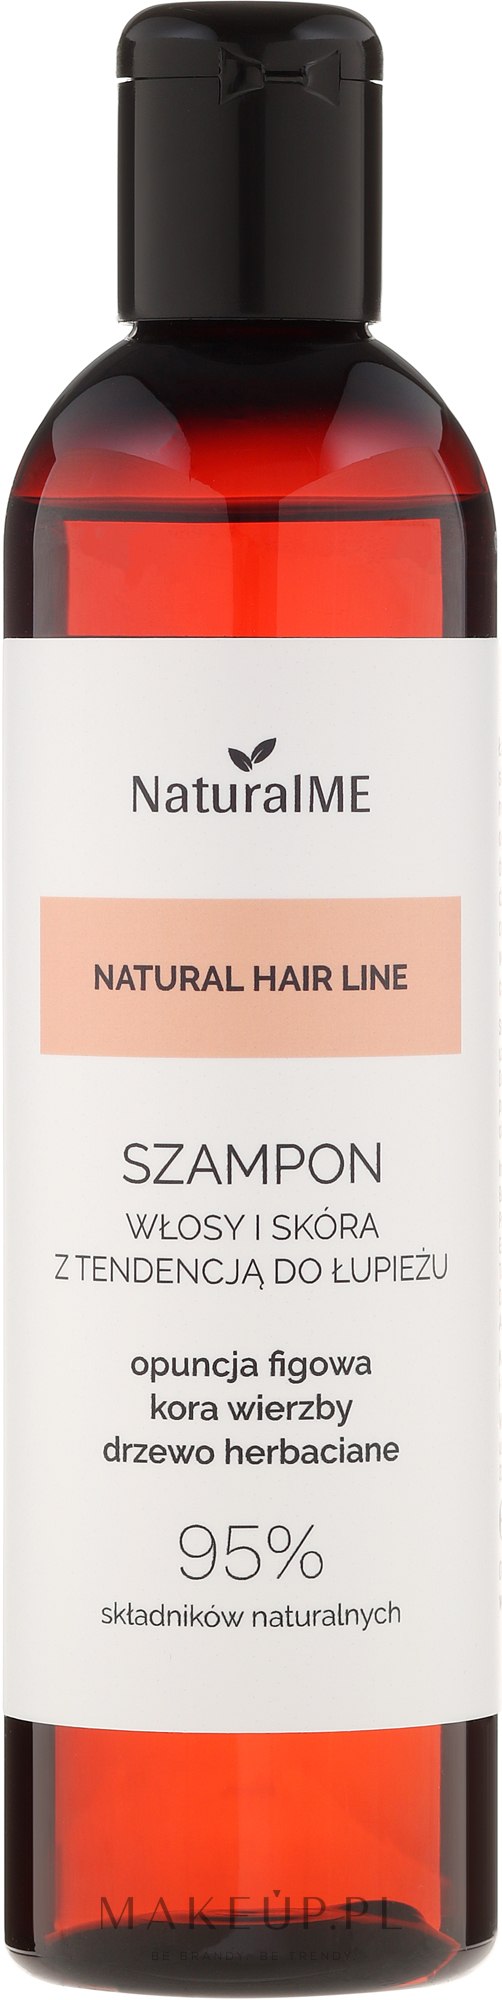 Szampon przeciwłupieżowy Opuncja figowa i kora wierzby - NaturalME Natural Hair Line Shampoo — Zdjęcie 300 ml